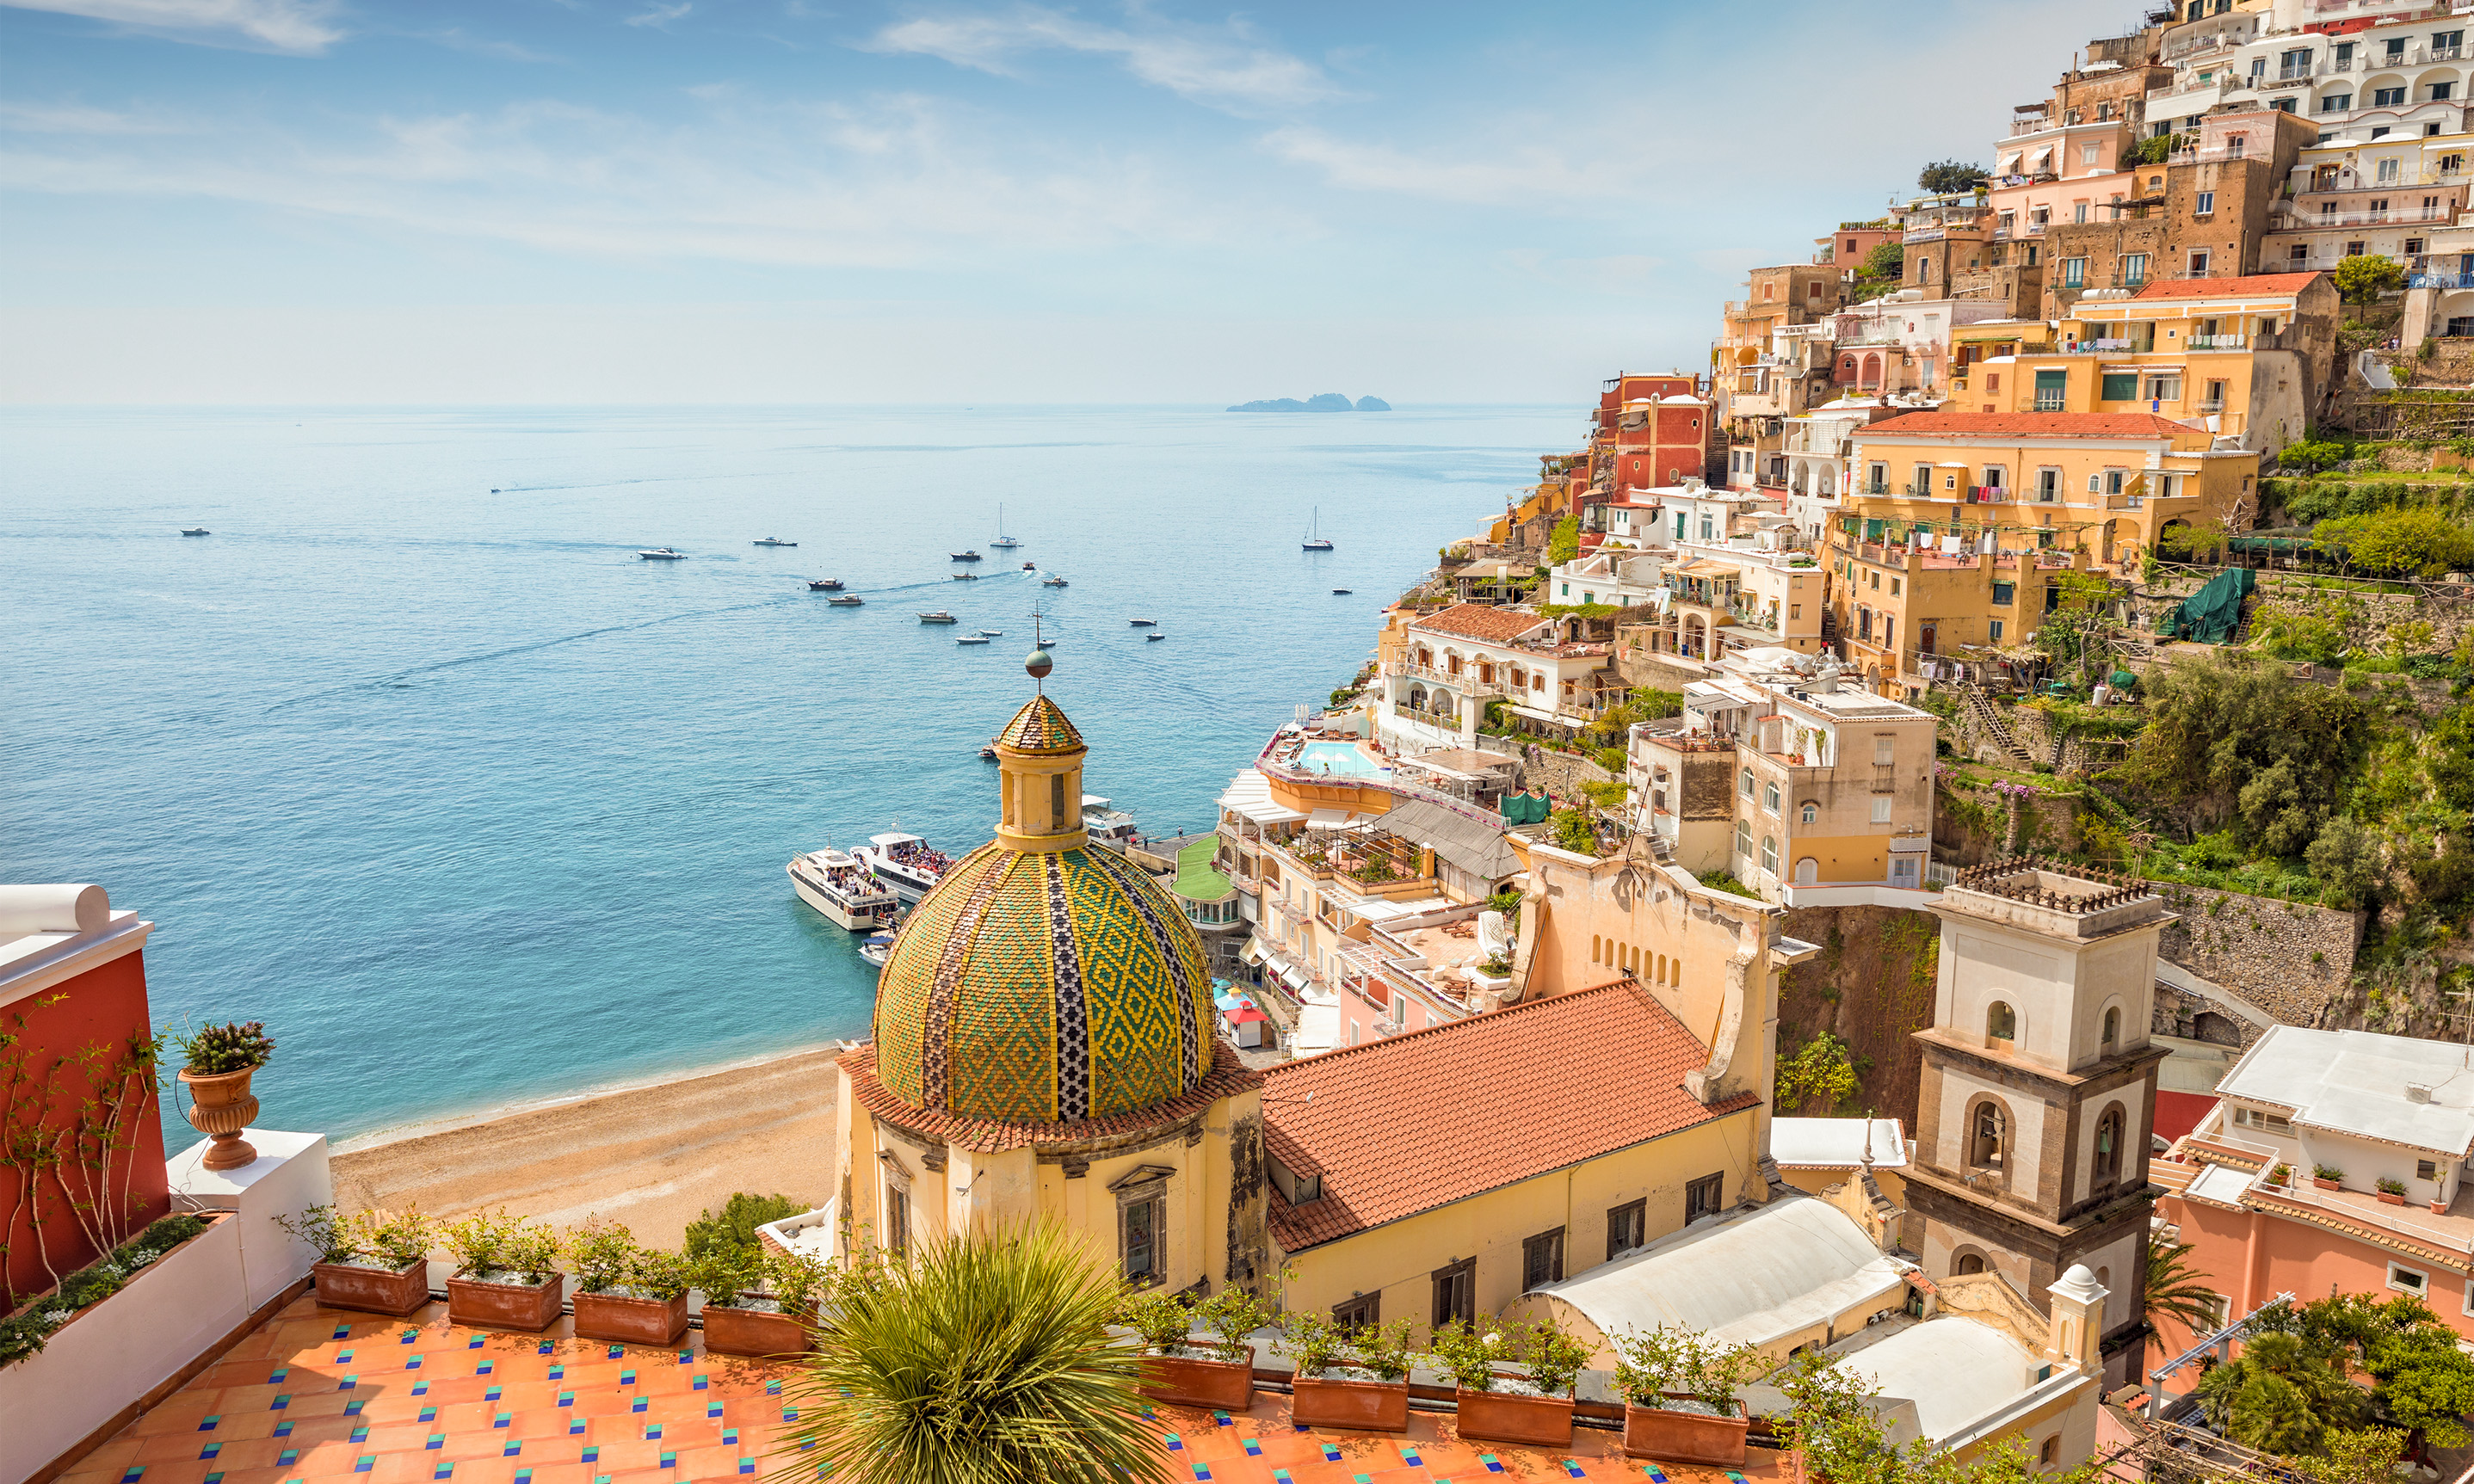 Amalfi Coast Vacation Rentals, Homes and More